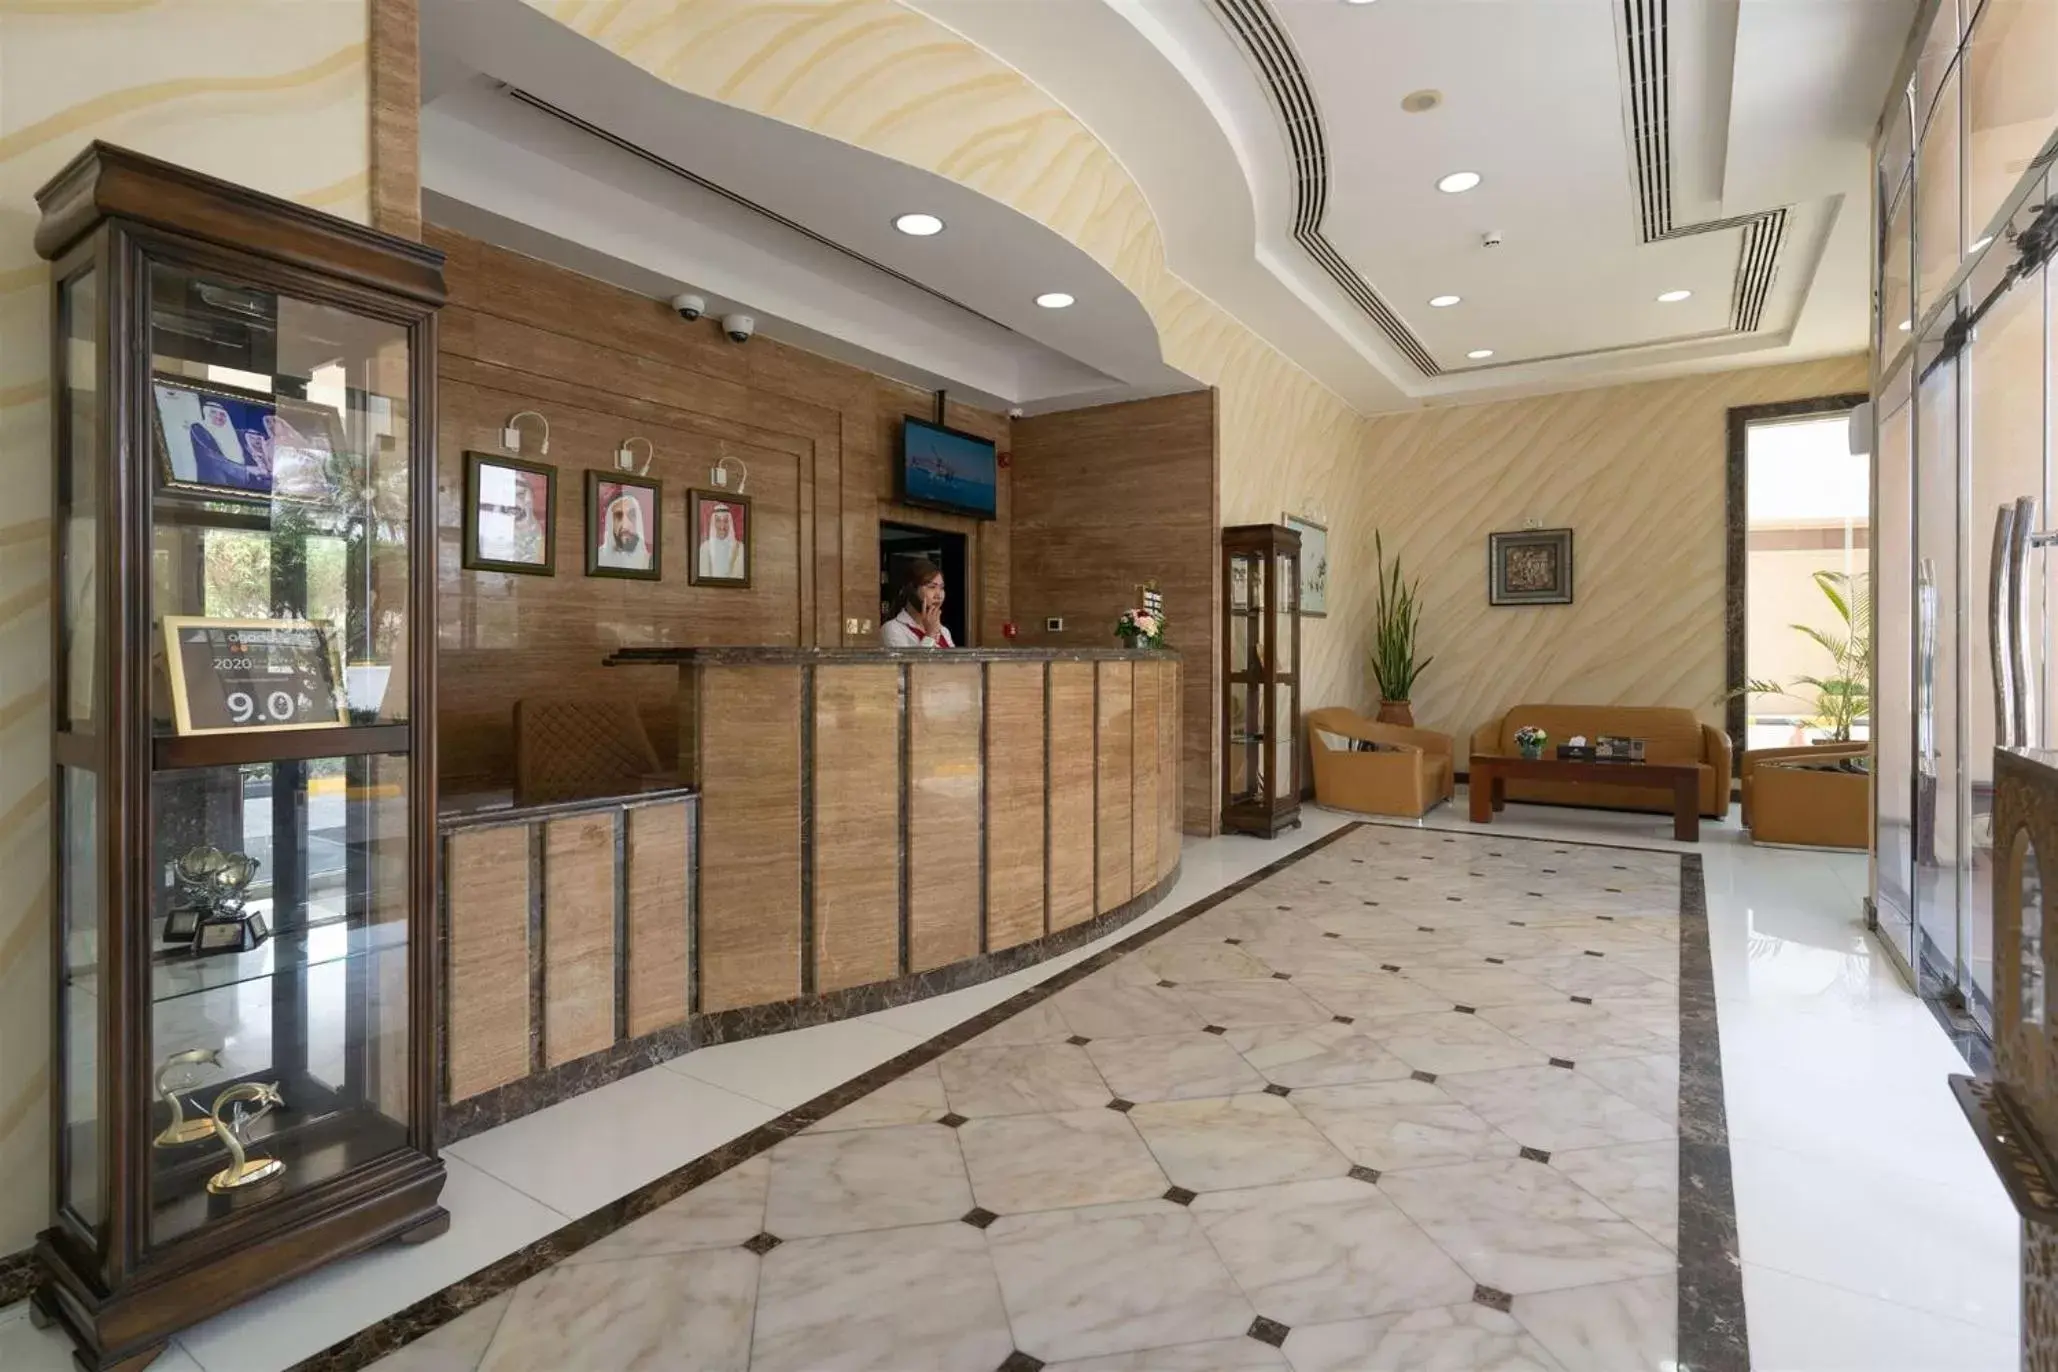 Lobby or reception, Lobby/Reception in Royal Beach Hotel & Resort